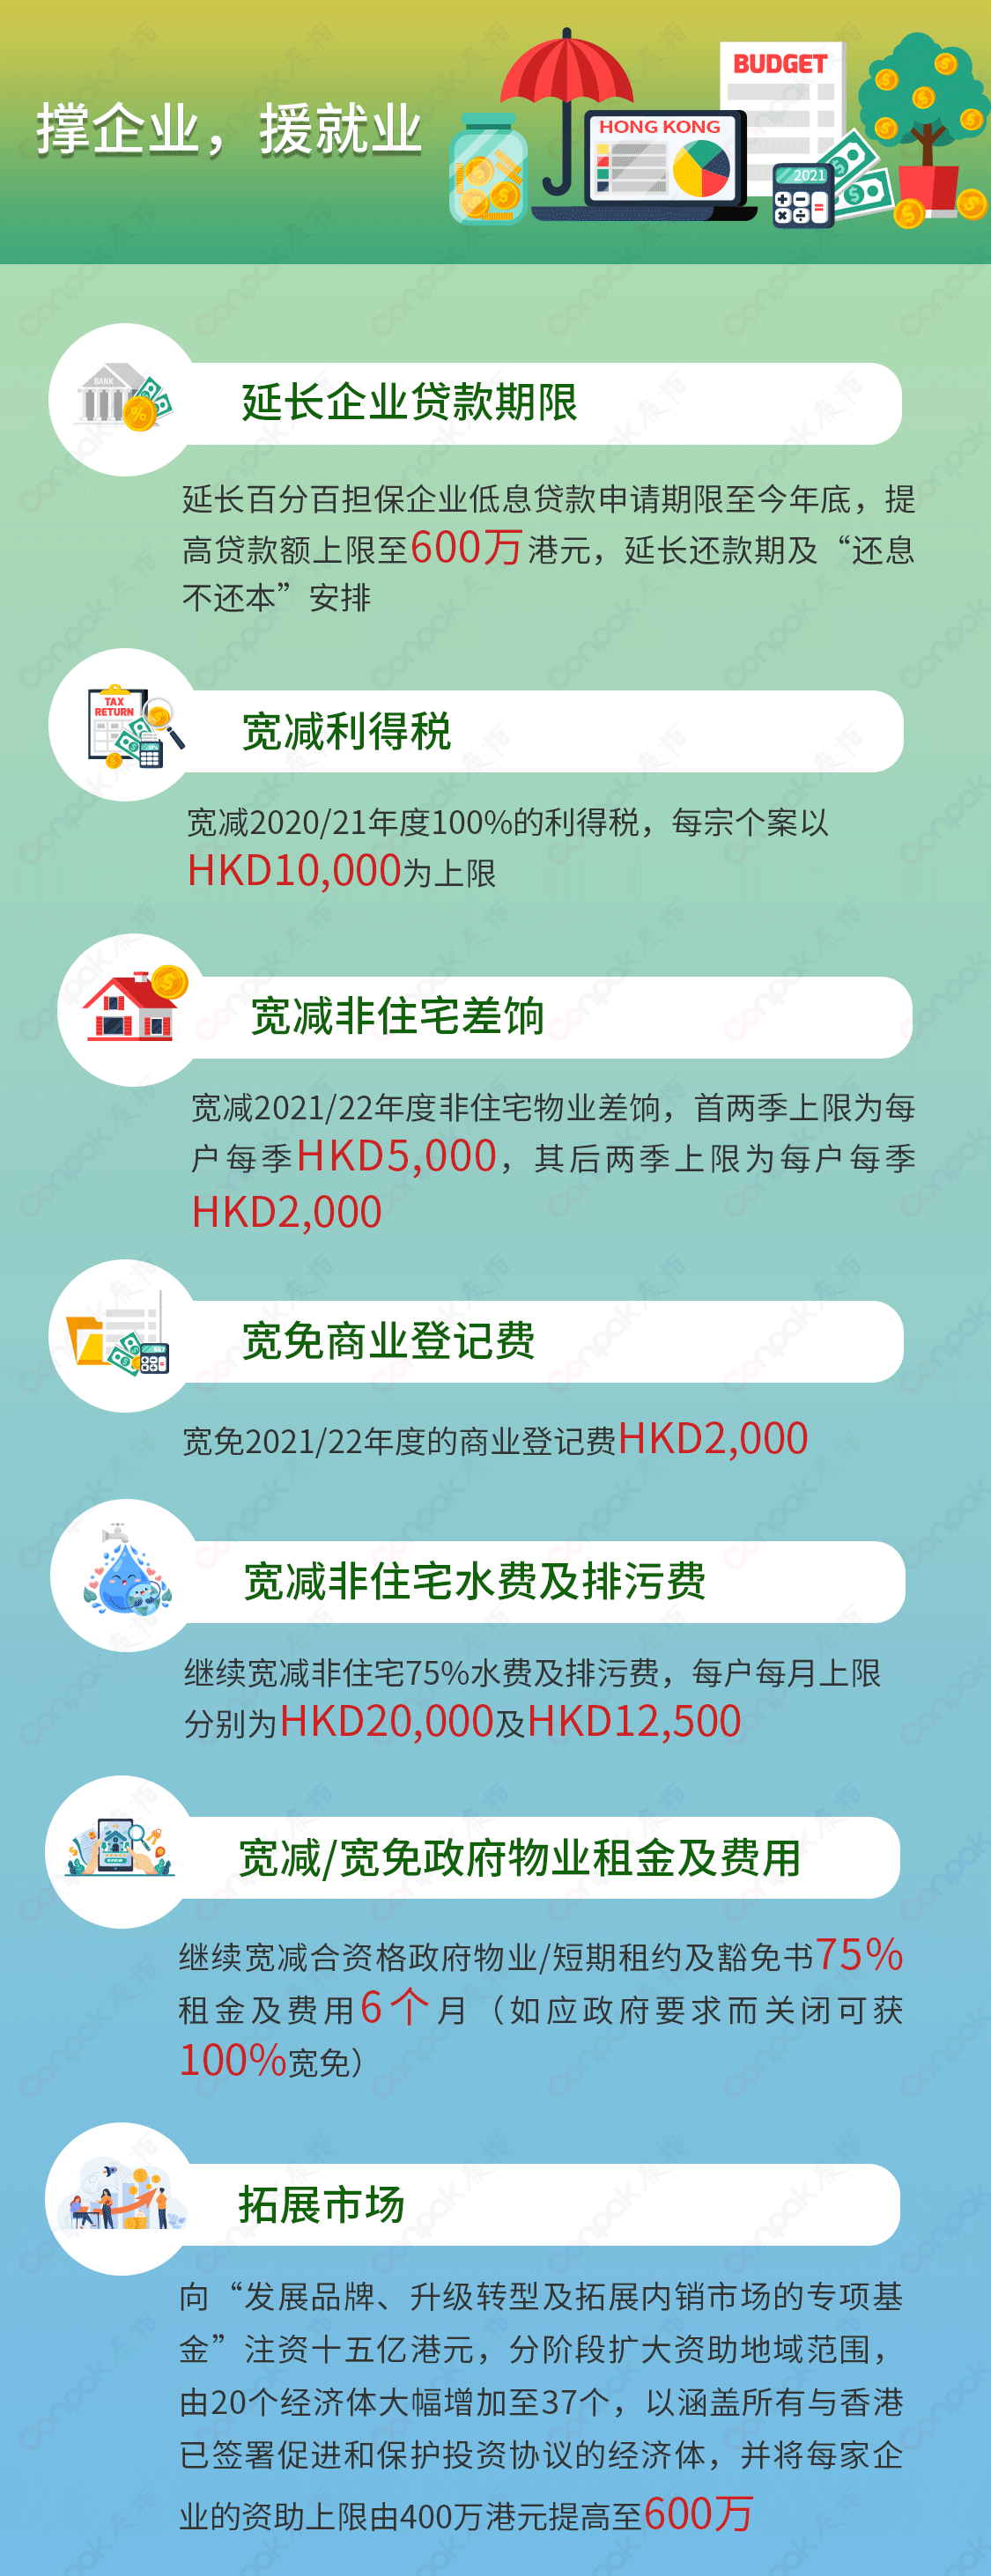 2021-22年度香港財政預算案主要措施